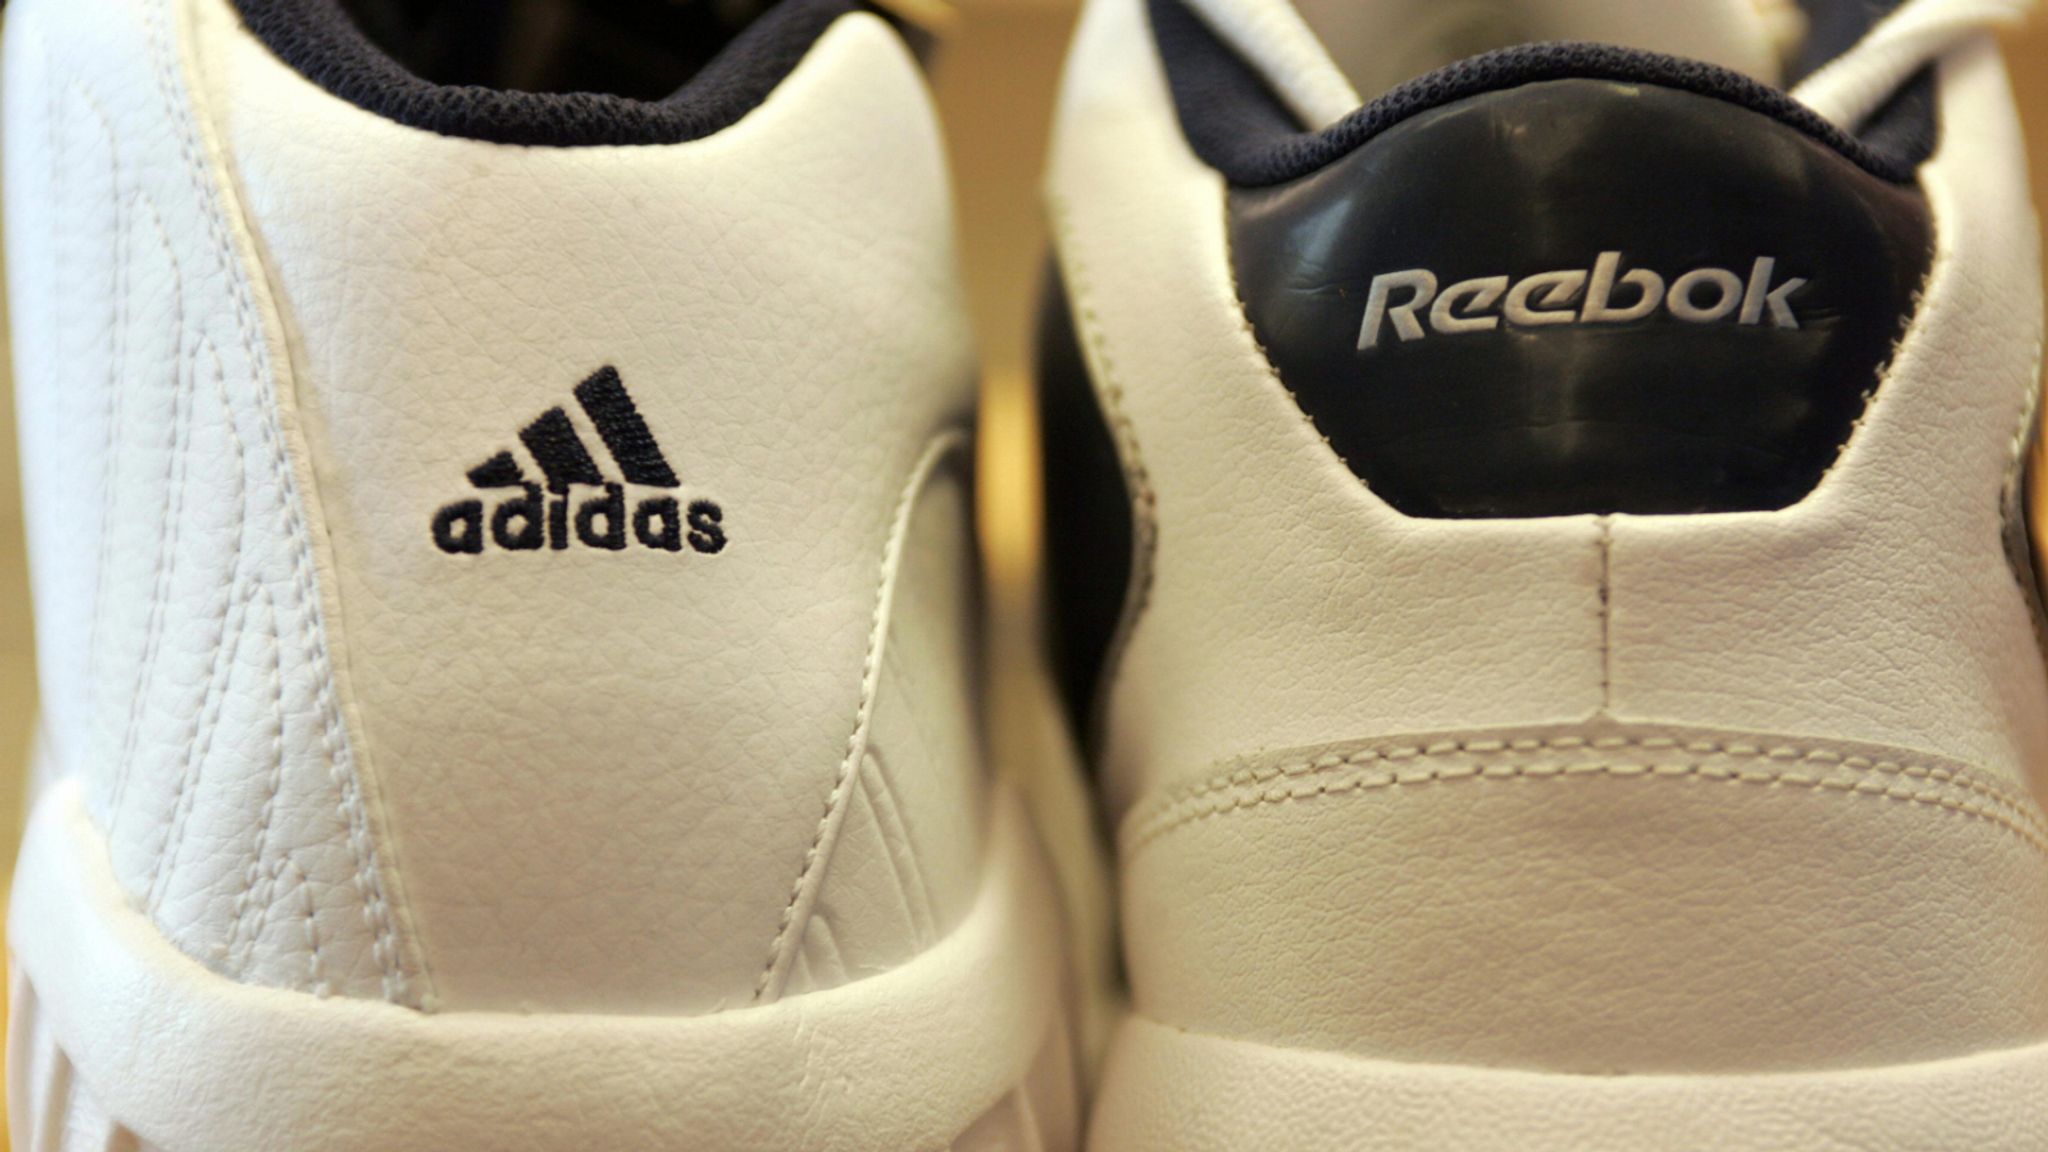 Sportswear giant Adidas looks set to 